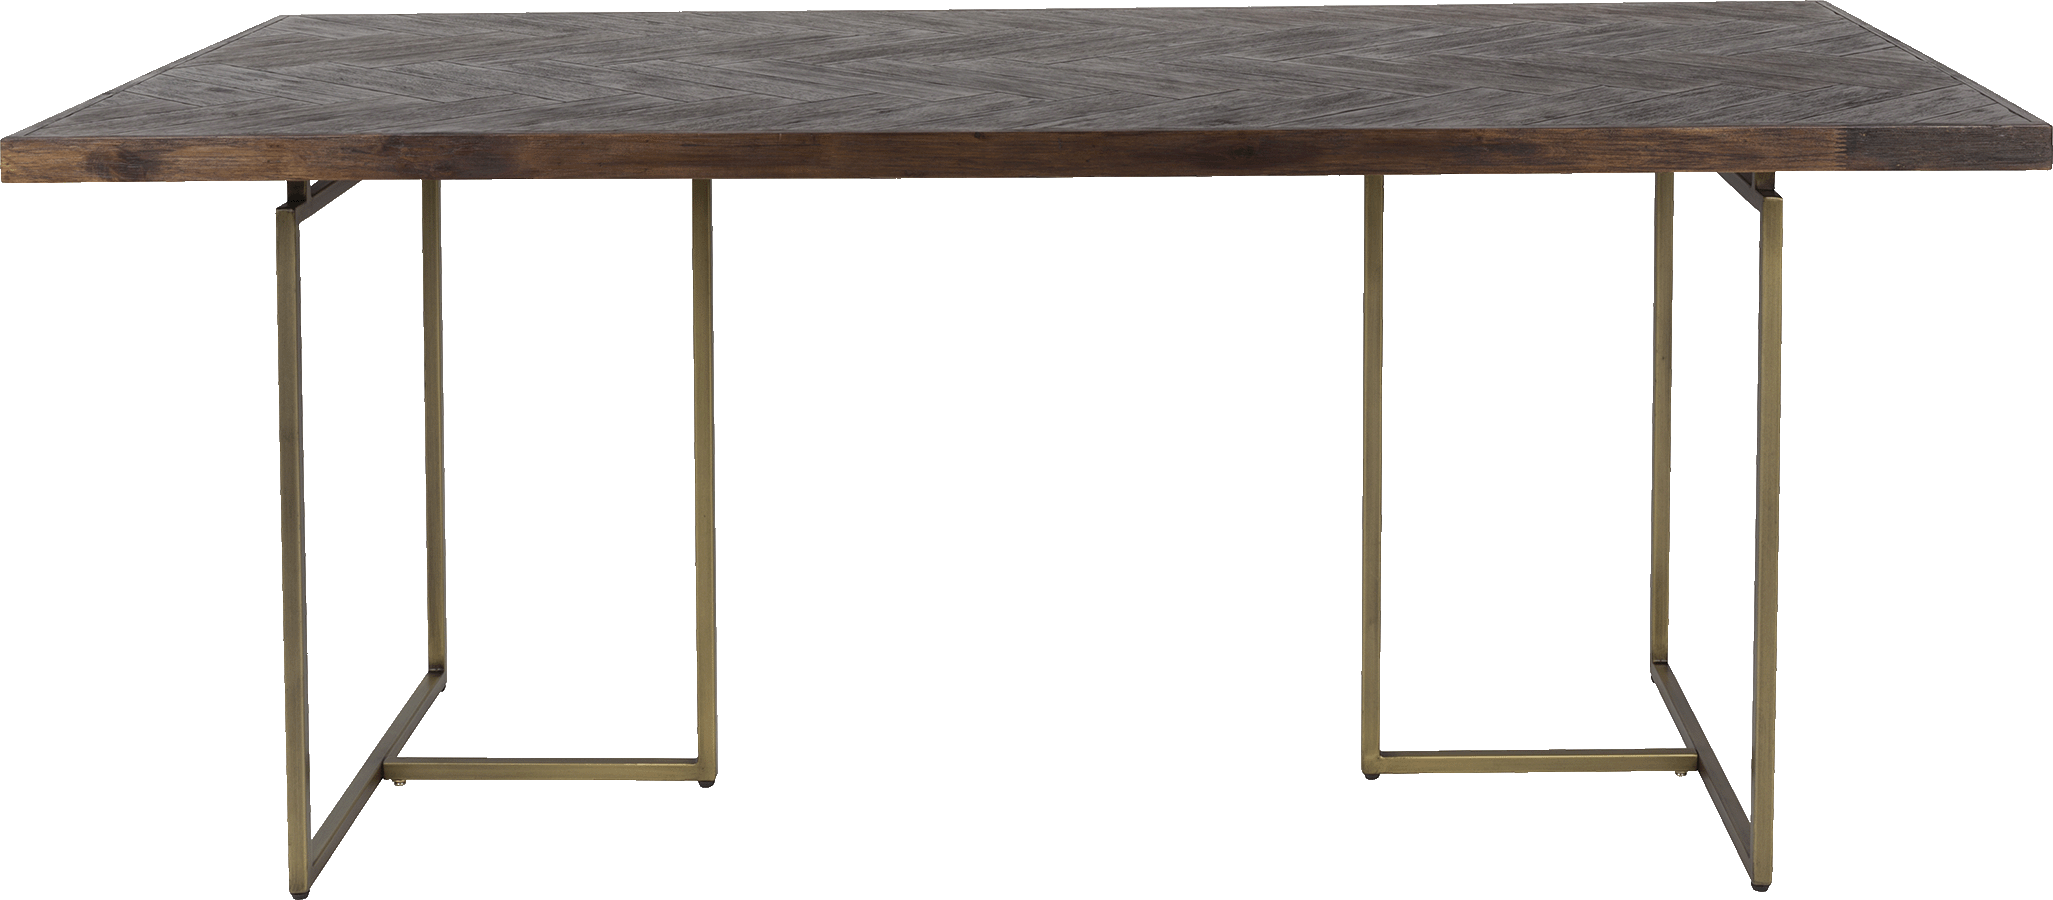 Dutchbone Class jedálenský stôl - Tmavé drevo, 220 x 90 cm